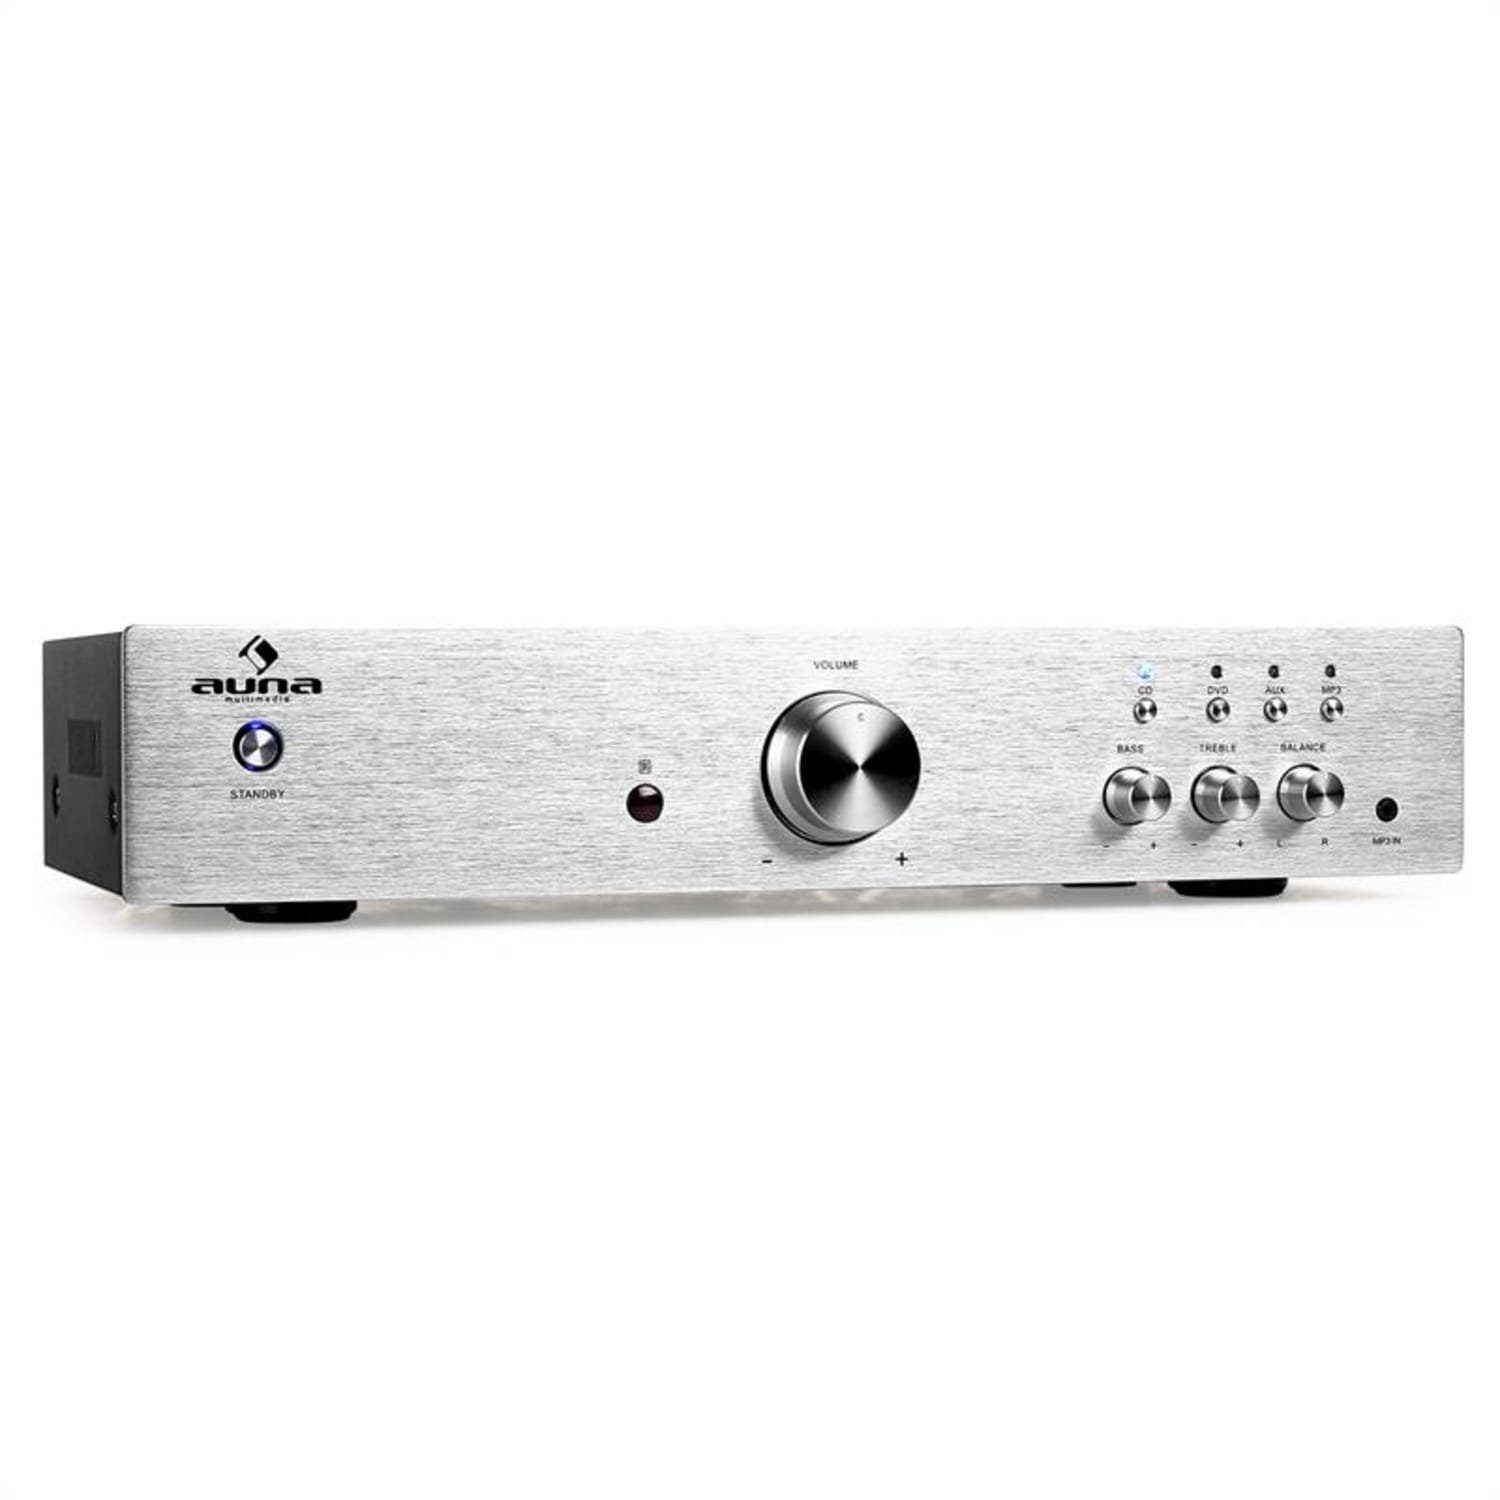 Silber Kanäle: und Stereo-Cinch-Audio-Eingänge (Anzahl 125 Auna drei Audioverstärker AV2-CD508 W) Line-Ausgang, ein